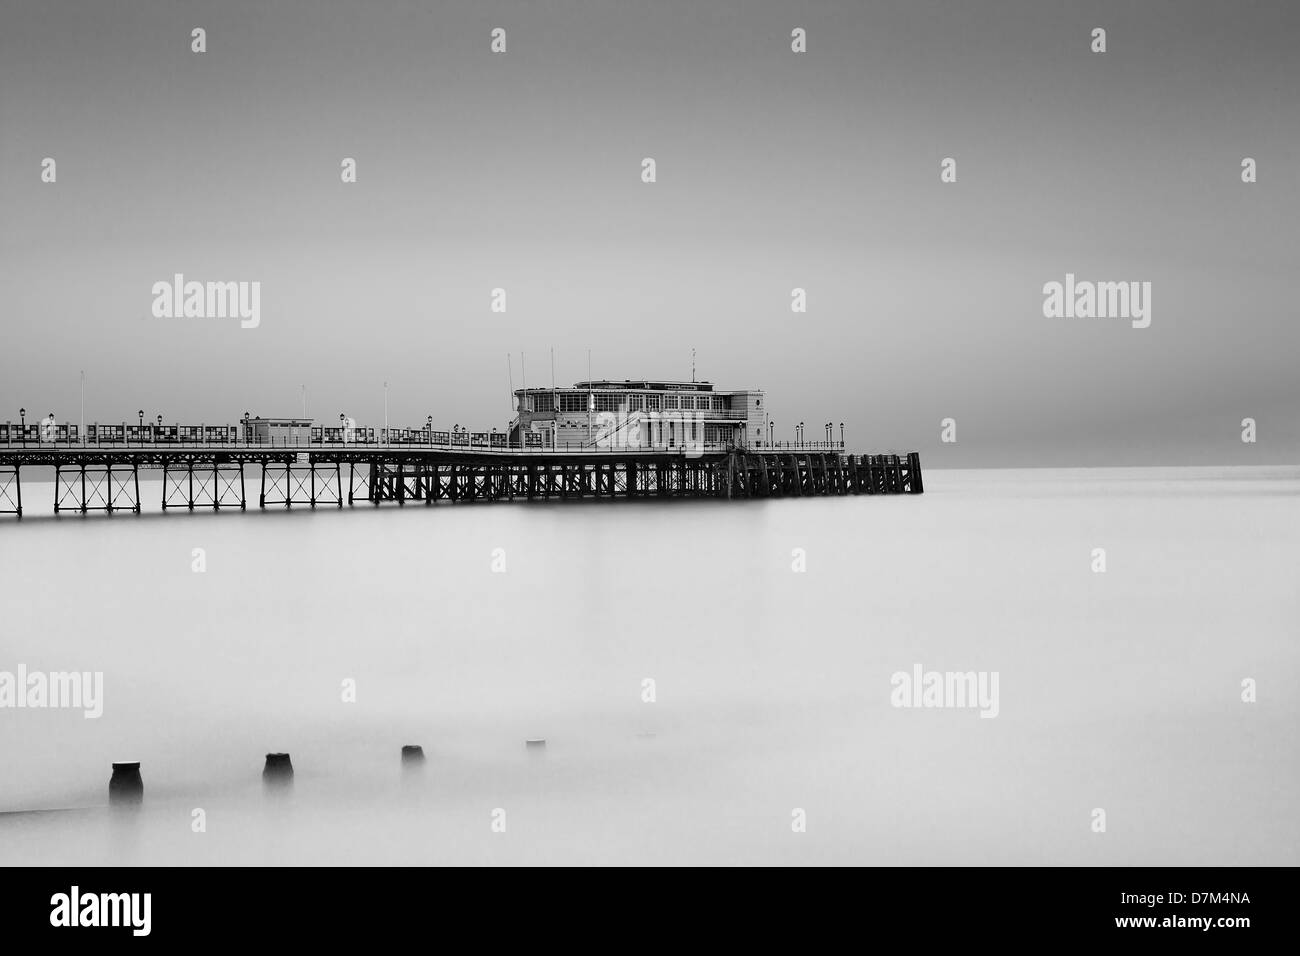 Ein Blick auf die Worthing Pier genommen mit einer langen Belichtungszeit, die Wellen zu beruhigen, es geben eine ruhige Stimmung. Stockfoto